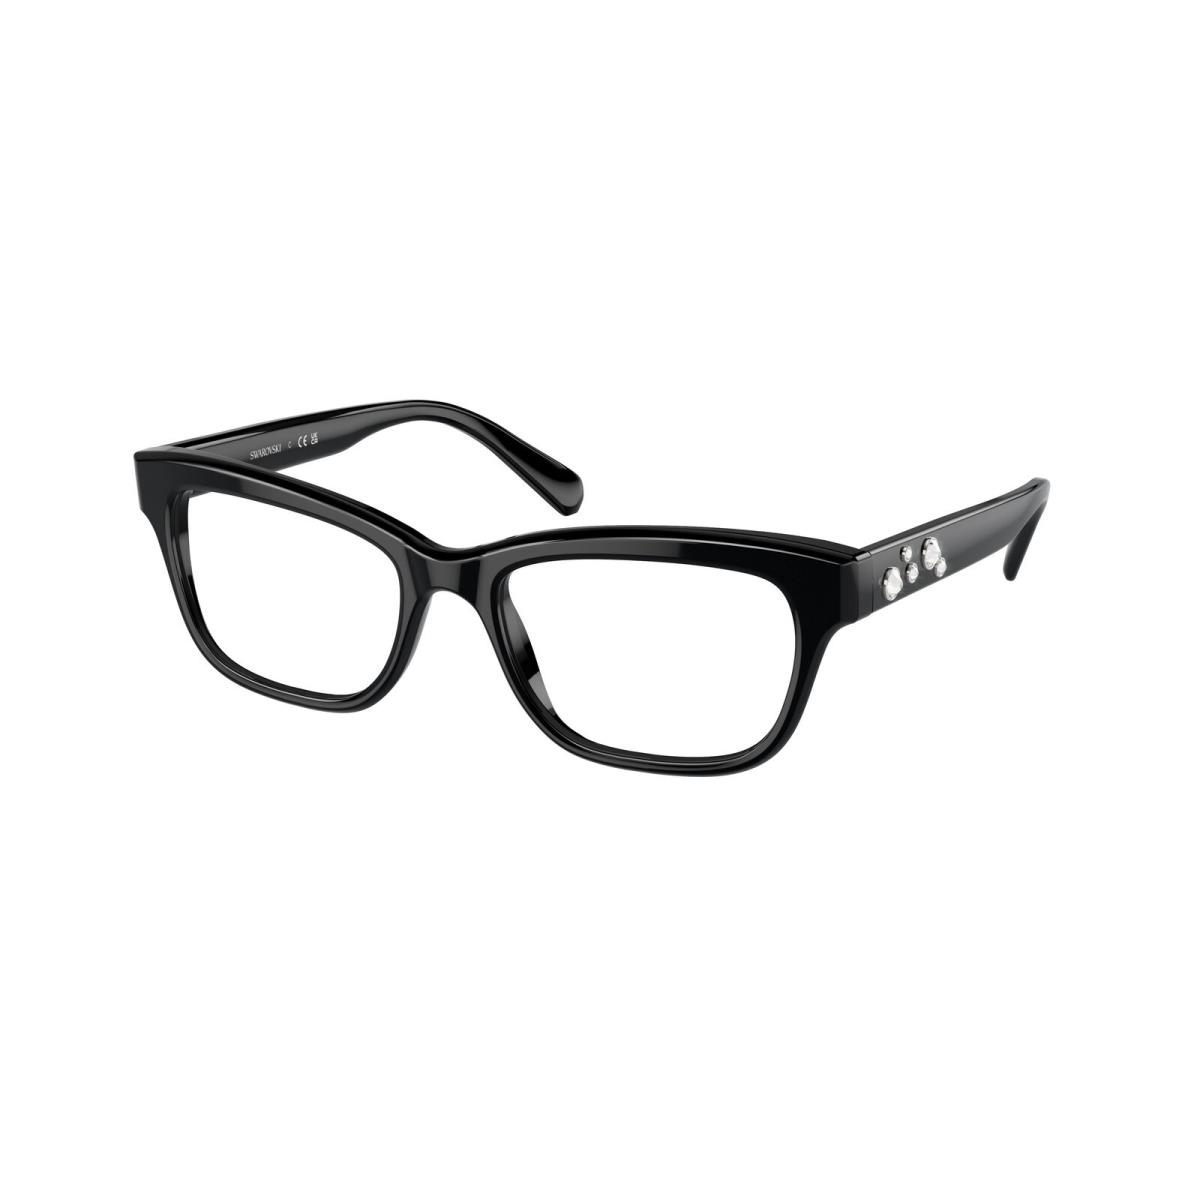 Swarovski SK 2022 Black 1001 Eyeglasses